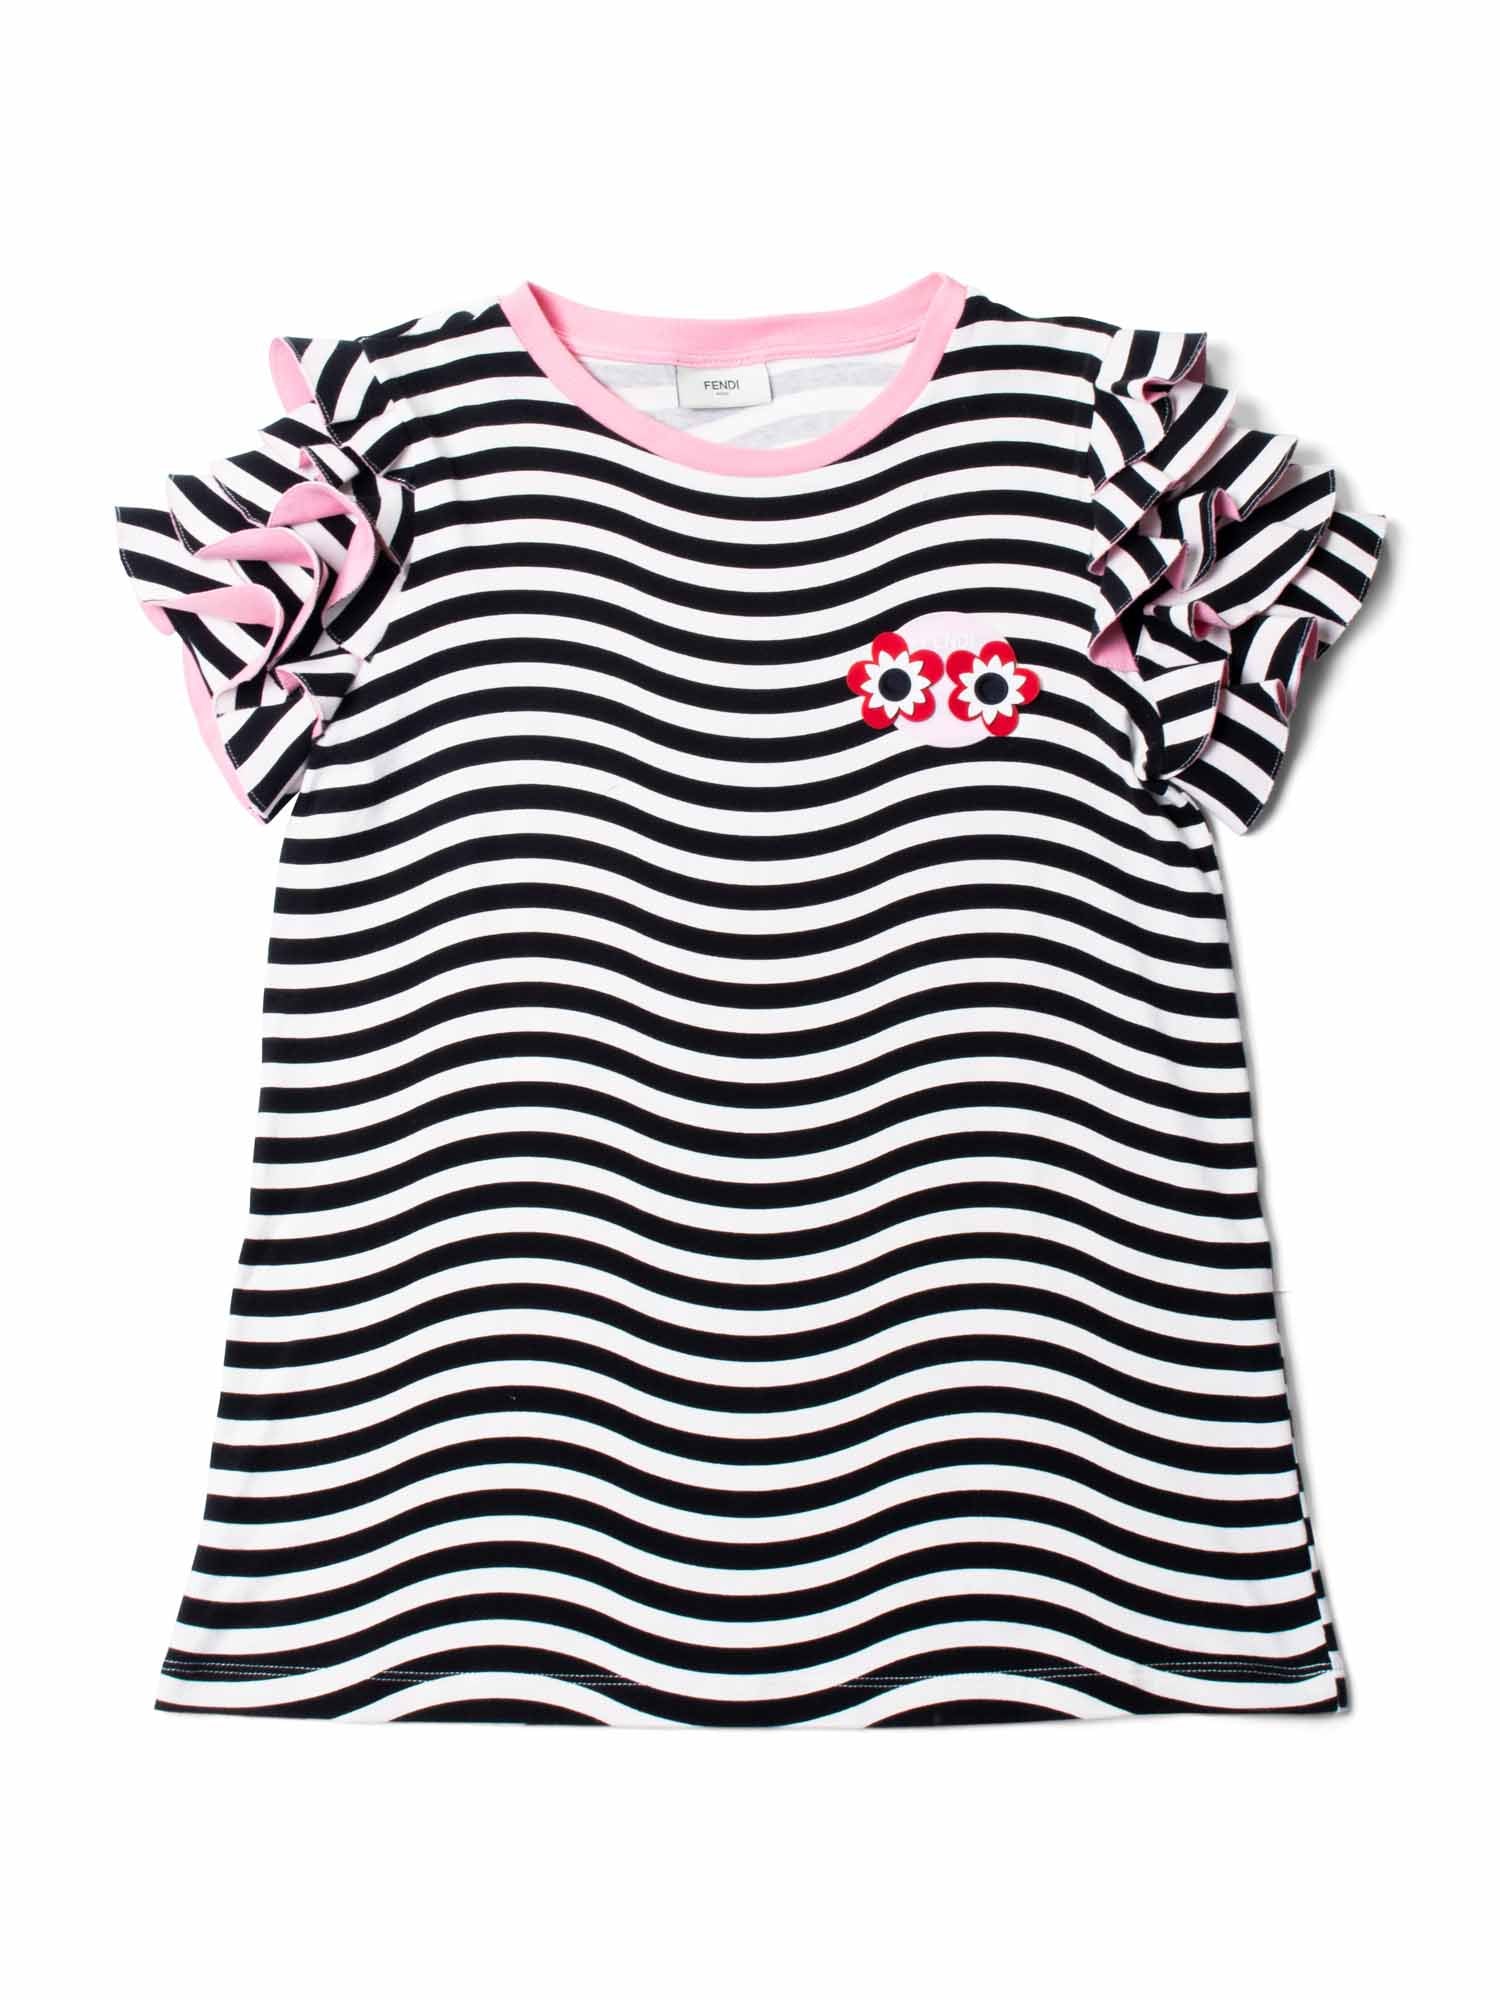 Fendi Logo Ruffled Striped Shirt Black White-designer resale